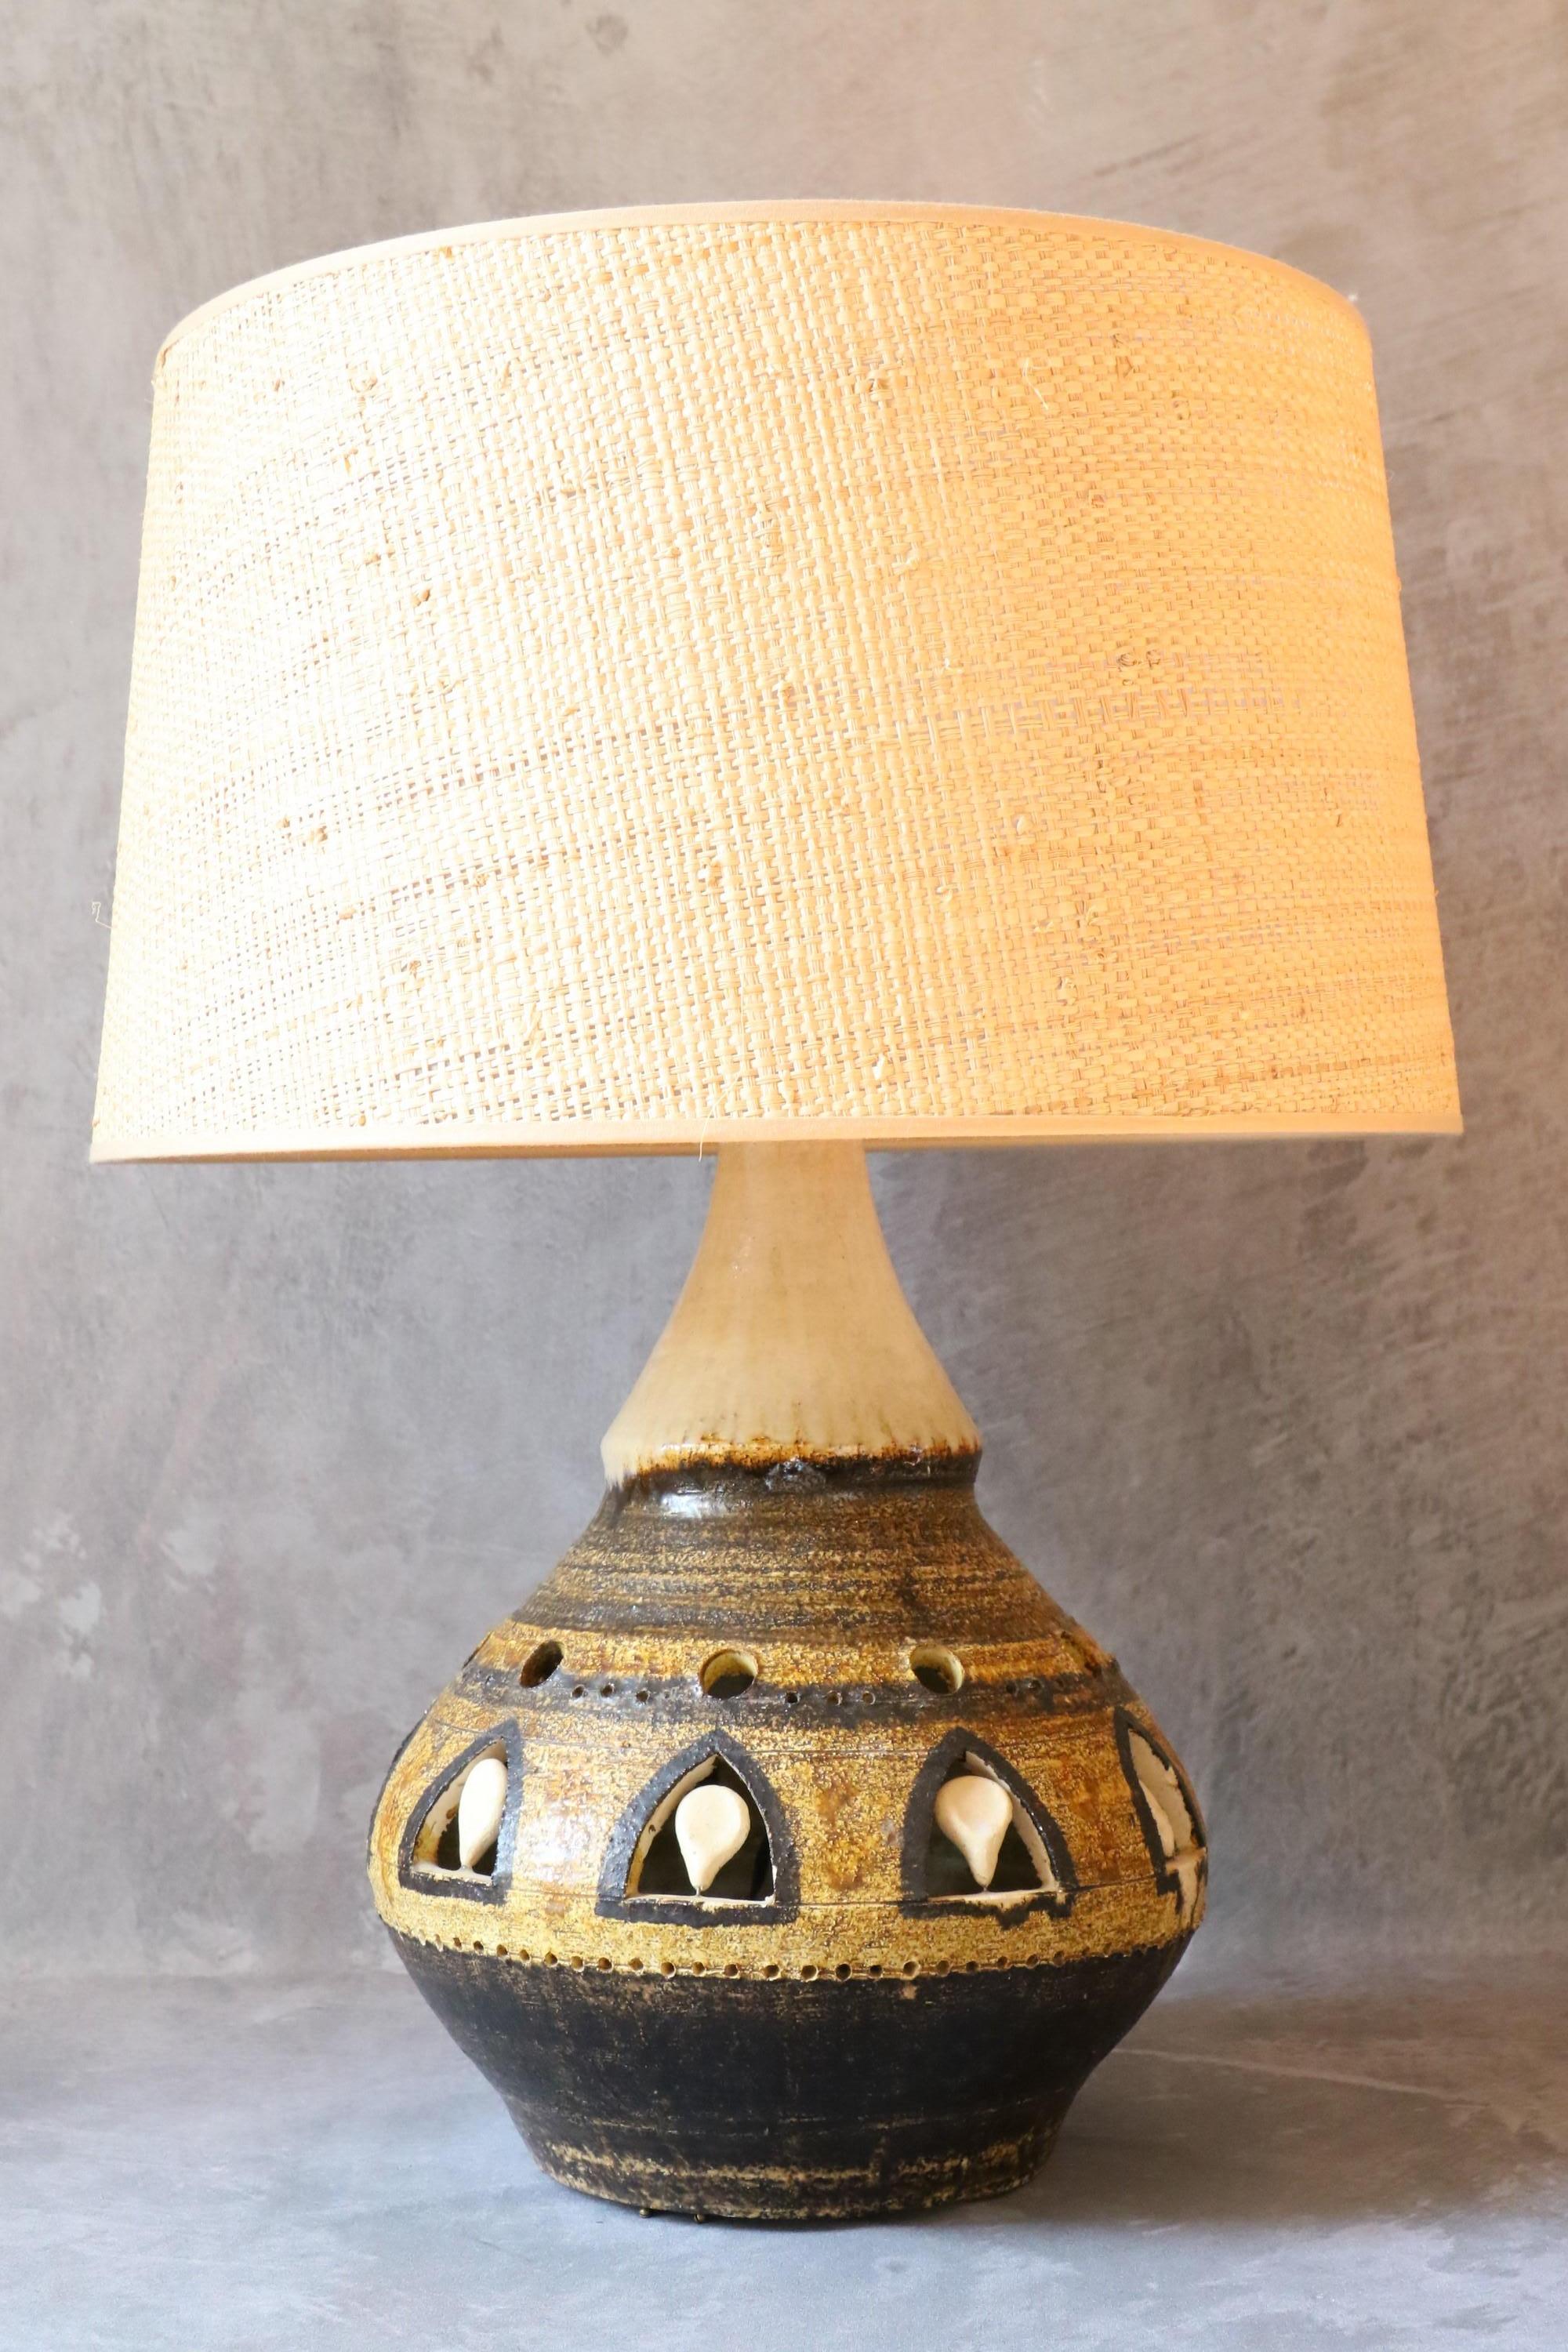 Massive doppelte Beleuchtung Keramiklampe von Georges Pelletier, 1970er, Frankreich

Es ist eine schöne Keramiklampe. Sie bietet eine doppelte Beleuchtung, da sich eine zweite Glühbirne im Inneren des Lampensockels befindet. Das Licht ist sehr weich